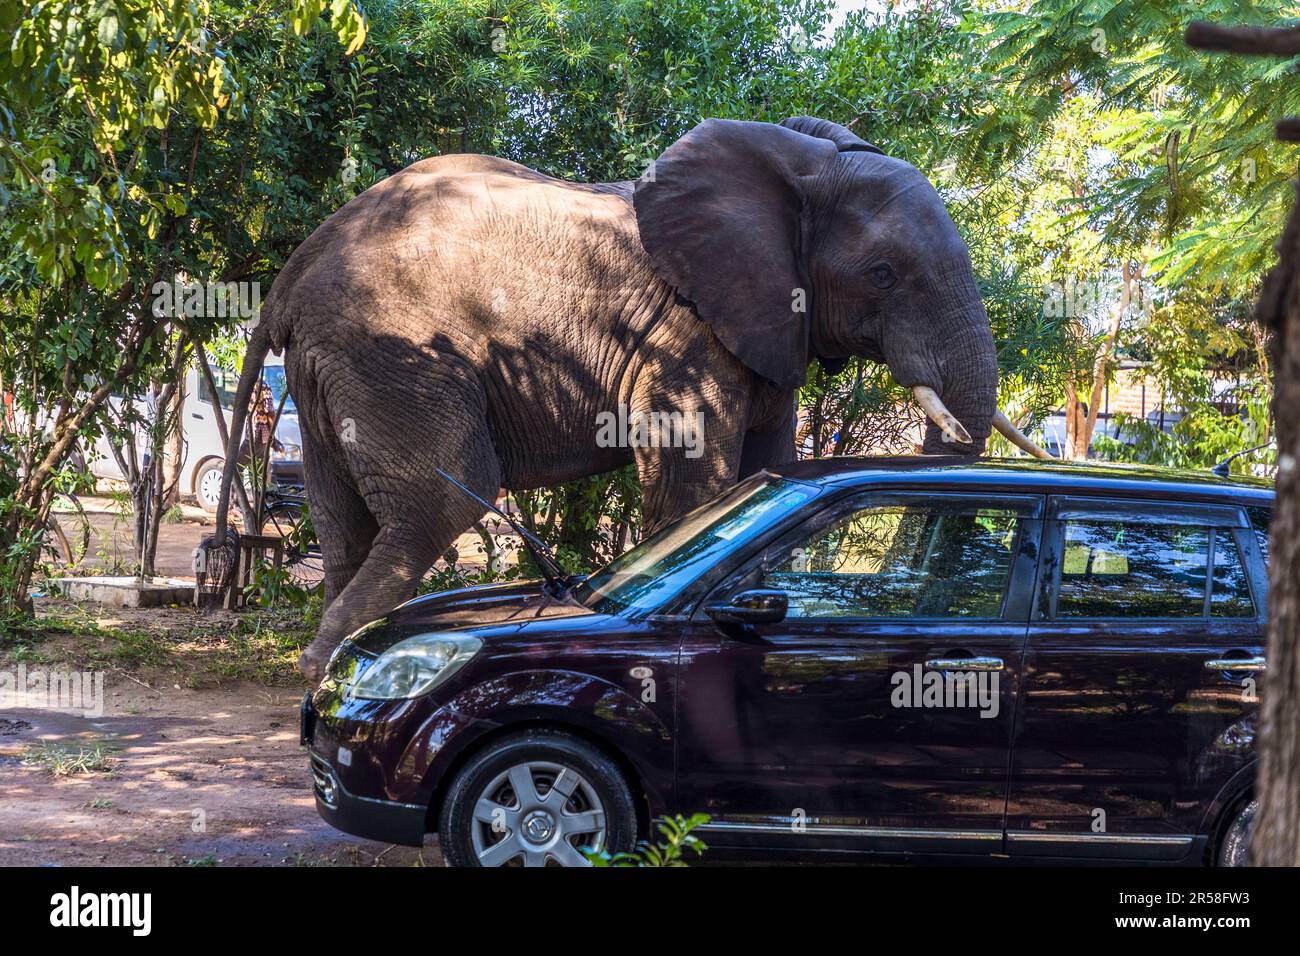 Grössenvergleich zwischen Elefant und Kleinwagen. Auf der Suche nach Essen überqueren die Elefanten aus dem Liwonde-Nationalpark auch den Fluss. Der Weg führt sie durch die Chalets und Baumhäuser der Lodge und über den Parkplatz. Auf dem Gelände der Kutchire Lodge, die sich im Nationalpark befindet, haben alle wilden Tiere freien Zugang. Liwonde-Nationalpark, Malawi Stockfoto